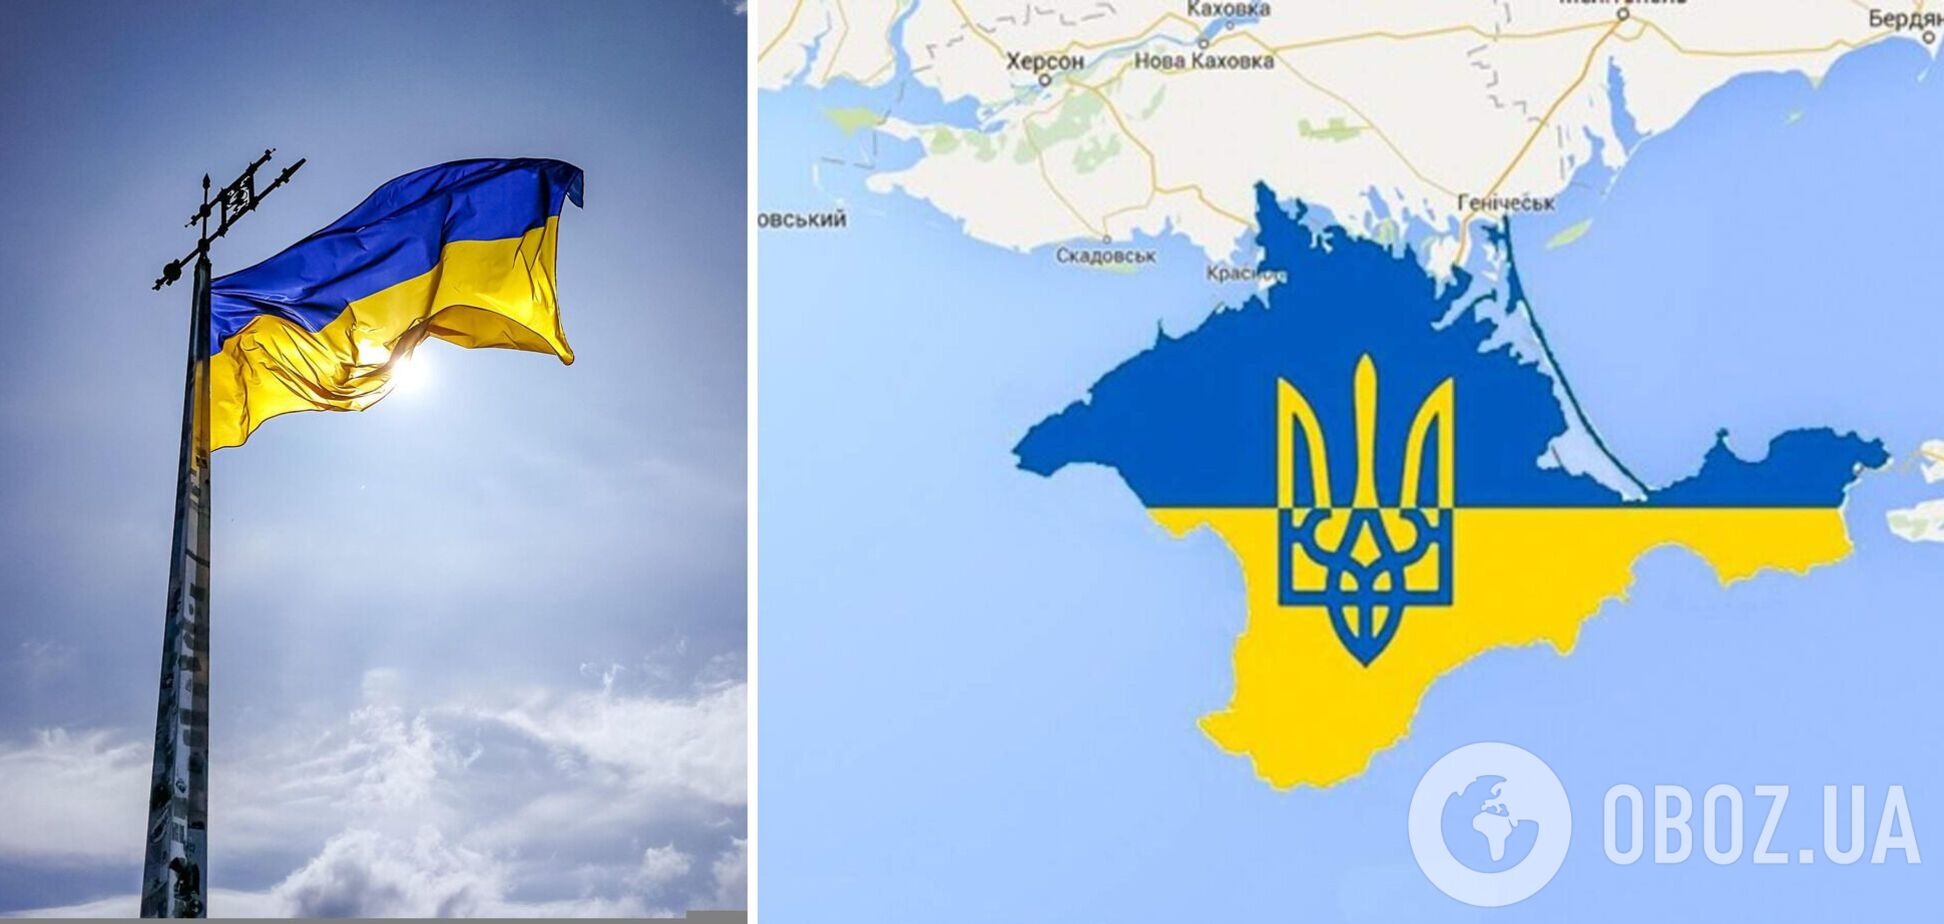 'Крым – это Украина': в Симферополе анонсировали проукраинский митинг 18 мая